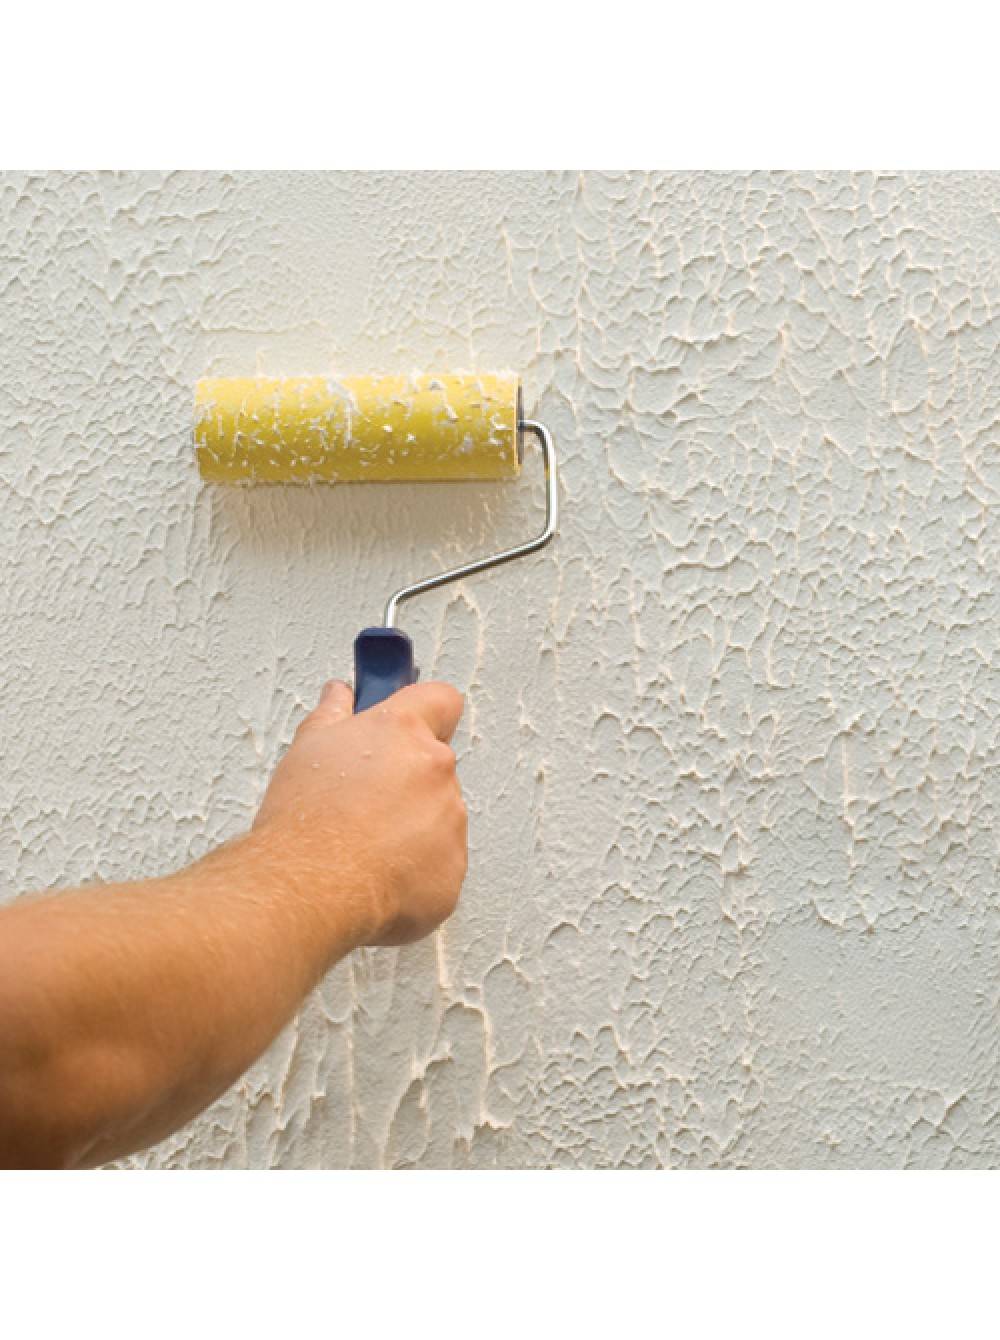 Краска внутри дома по цементной штукатурке для внутренних и наружных работ, можно ли наносить краску на цементную, гипсовую и известковую штукатурку